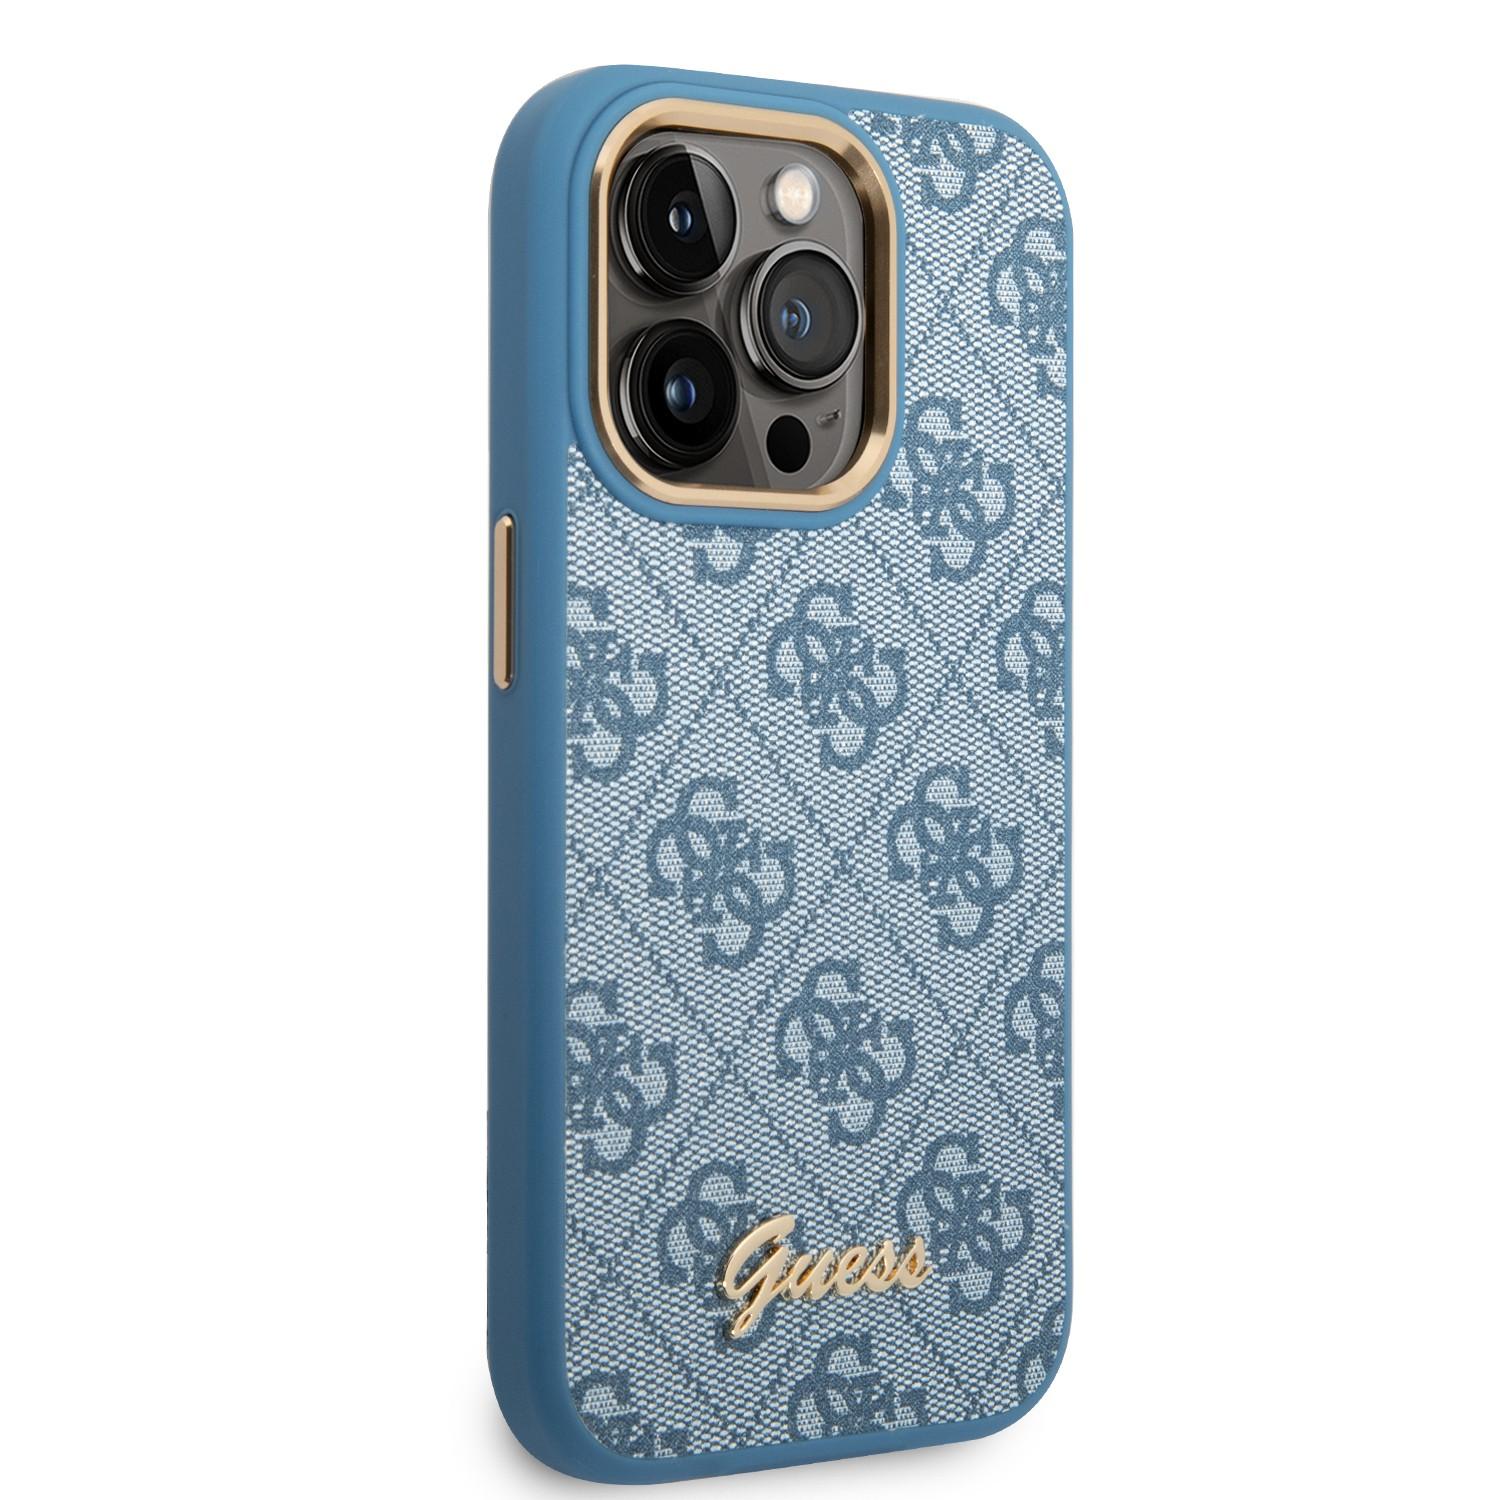 كفر ايفون 14 برو أزرق جيس Guess PC/TPU 4G PU Case With Metal Camera Outline & Buttons For iPhone 14 Pro Blue - cG9zdDoxMzg1MDQw